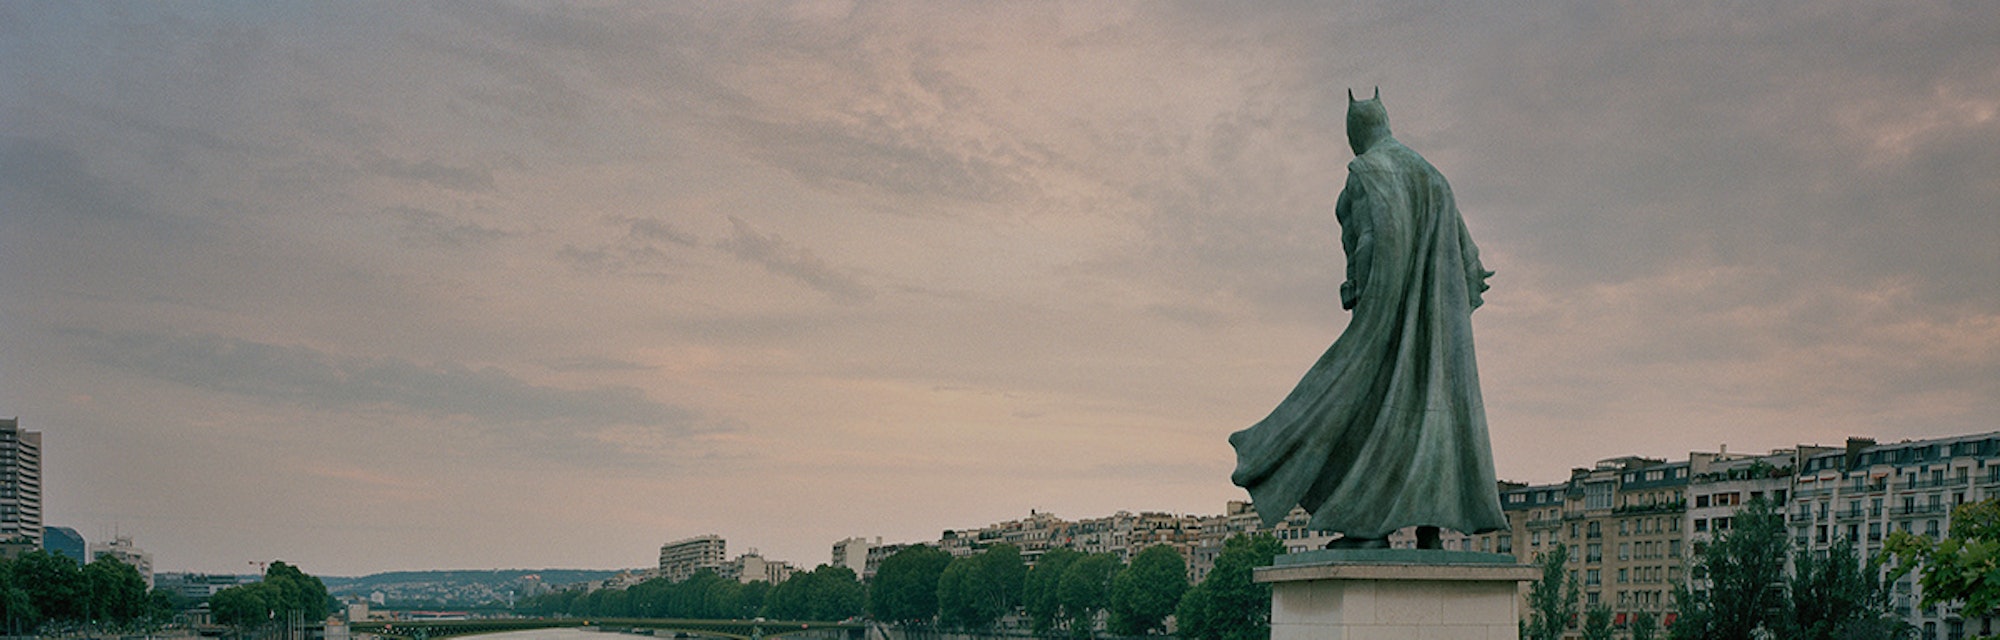 Batman statue in Paris